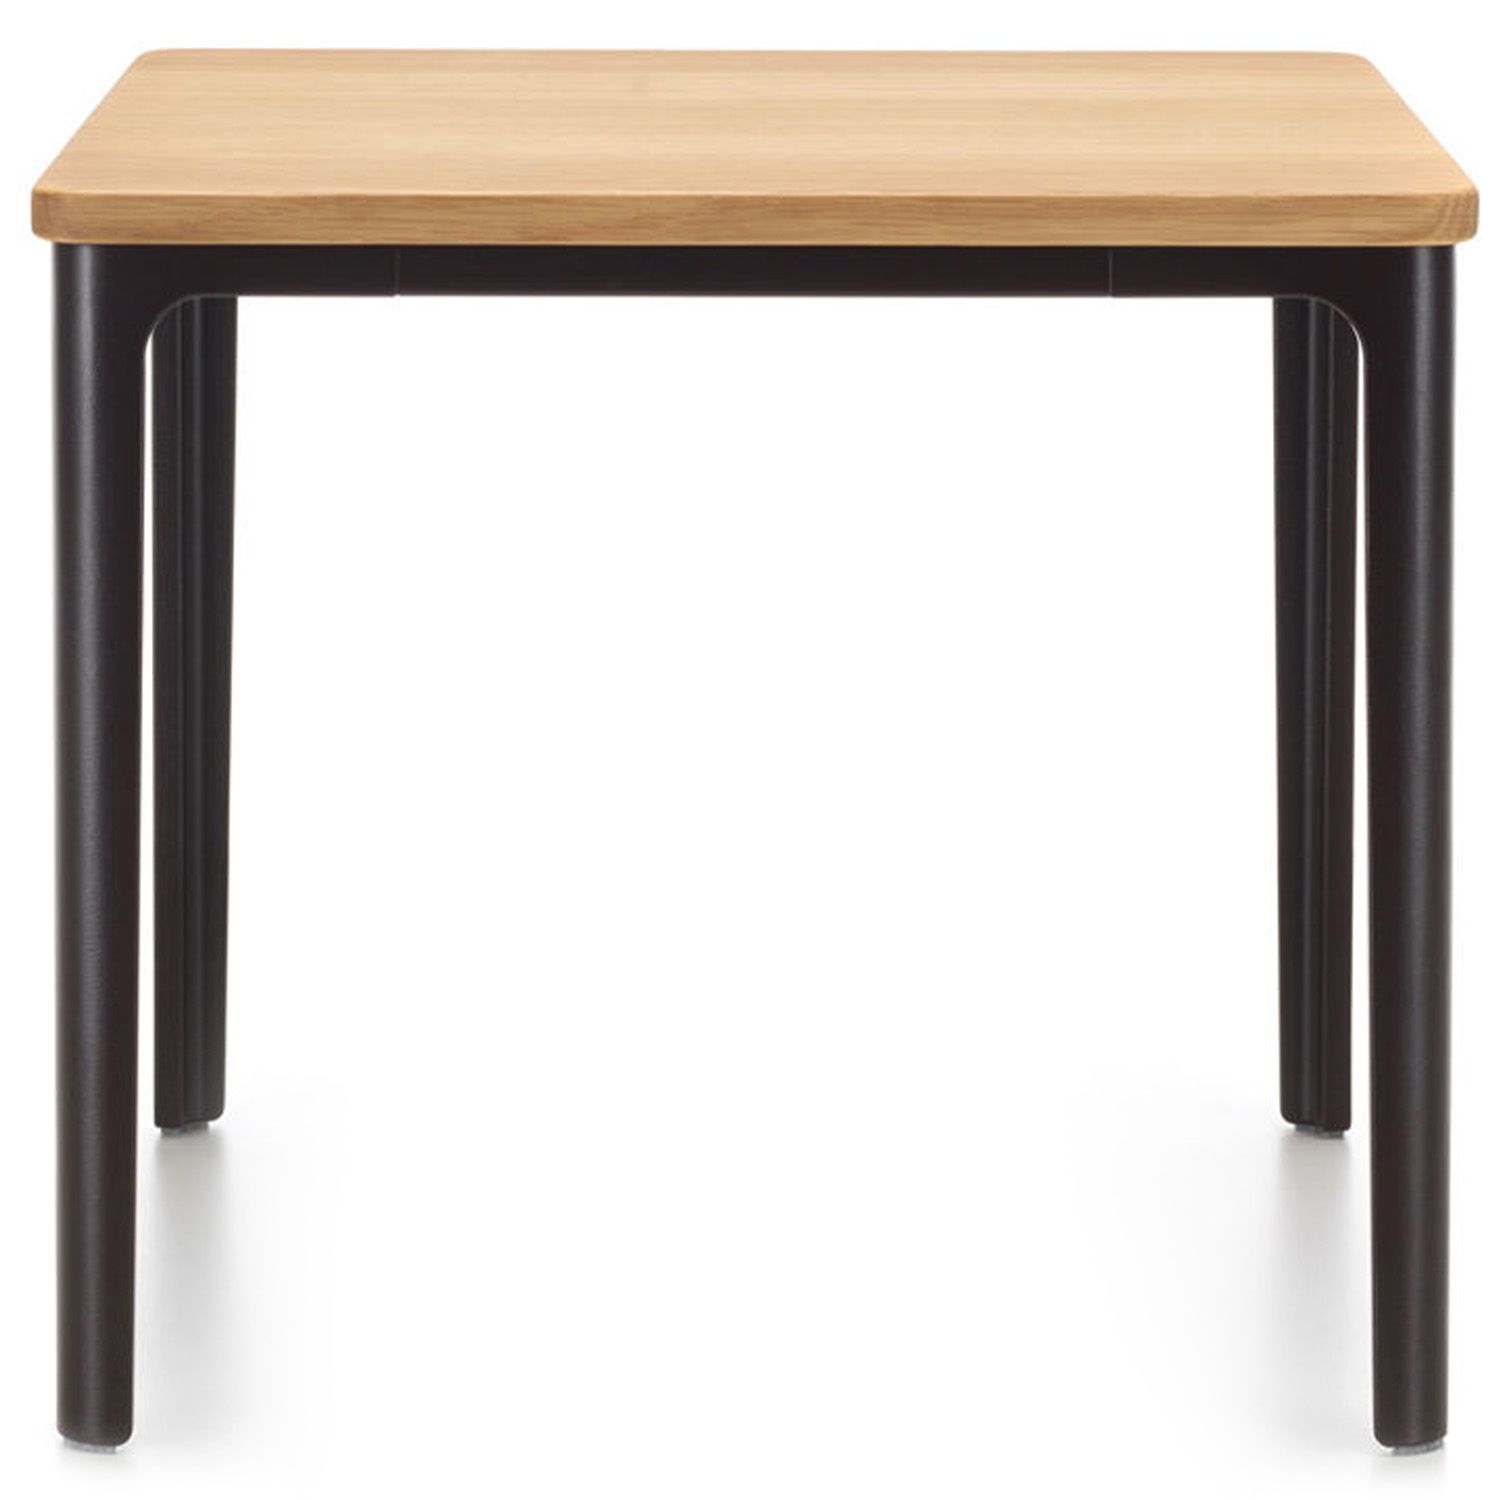 Vitra designové konferenční stoly Plate Table Square (71 x 71 cm) - DESIGNPROPAGANDA